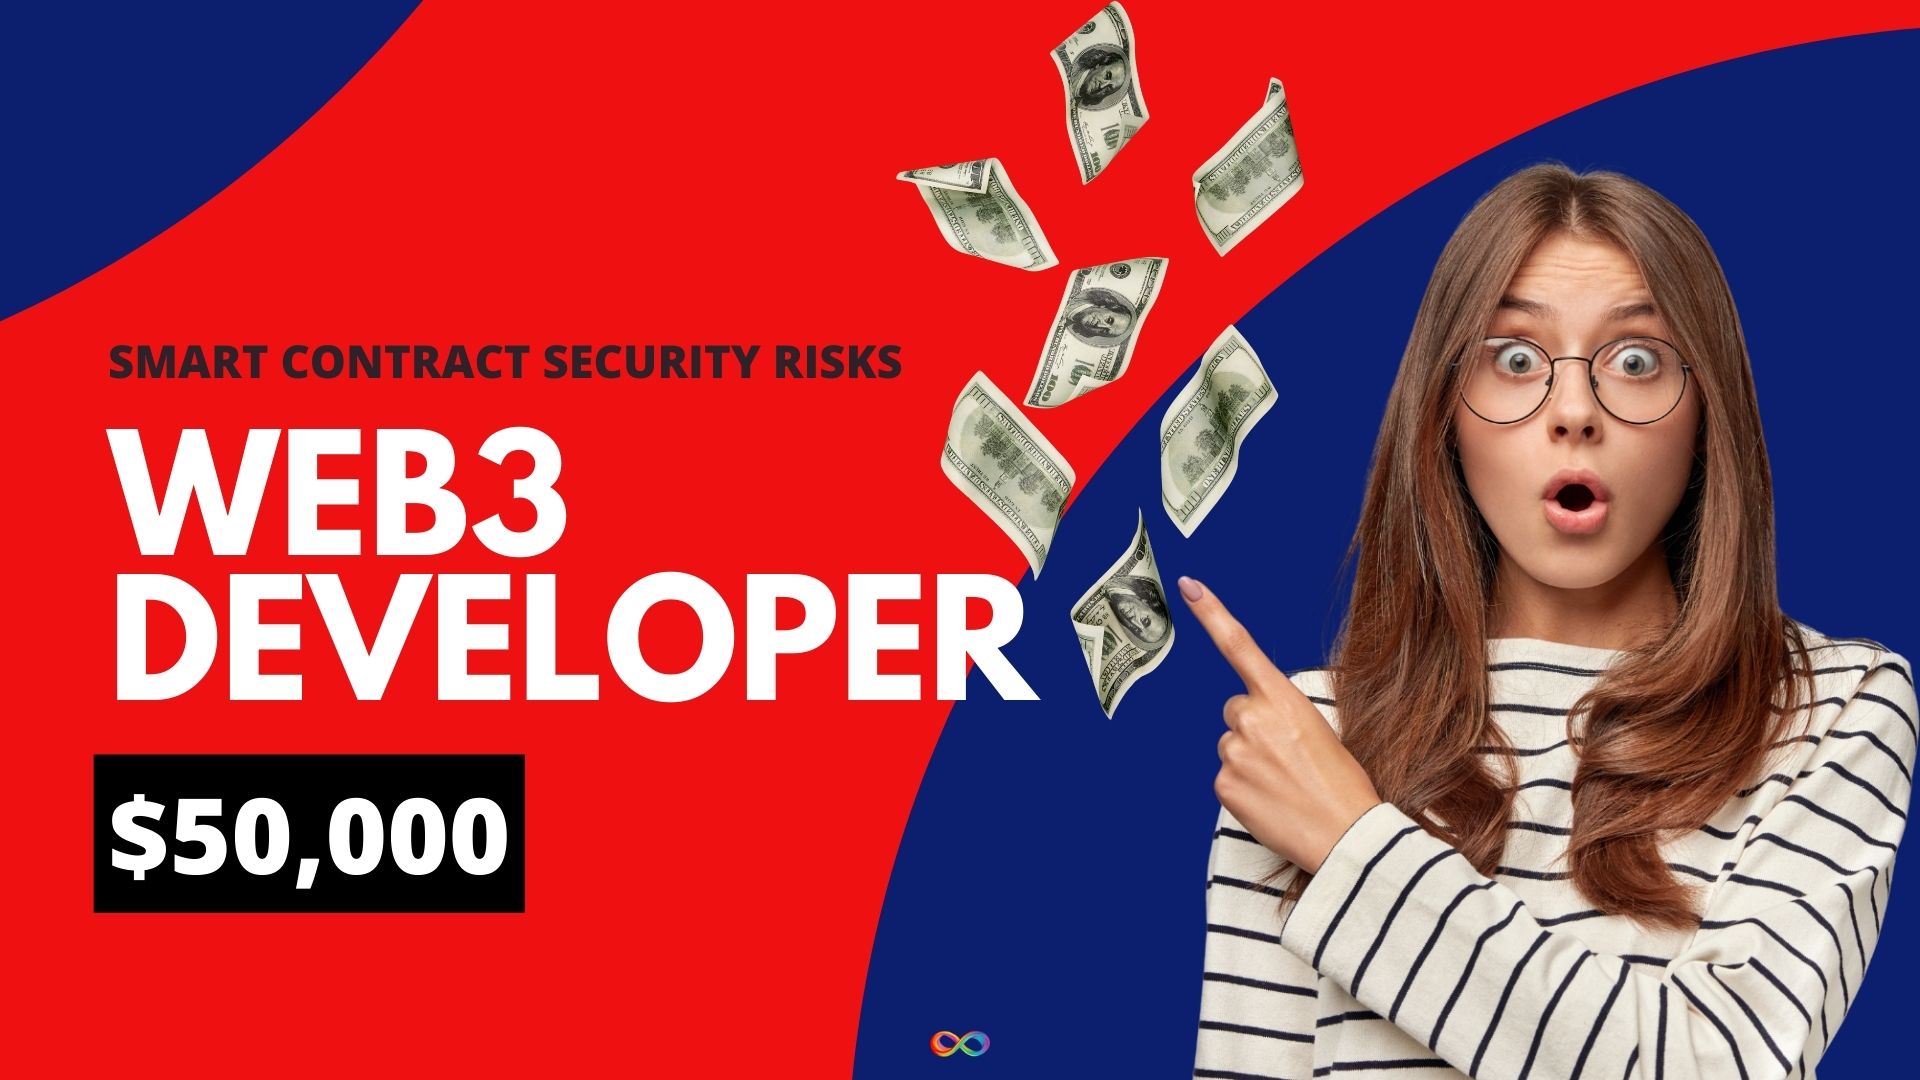 توسعه دهنده Web3 با توجه به خطرات امنیتی قراردادهای هوشمند جدید، جایزه را به 50000 دلار افزایش می دهد